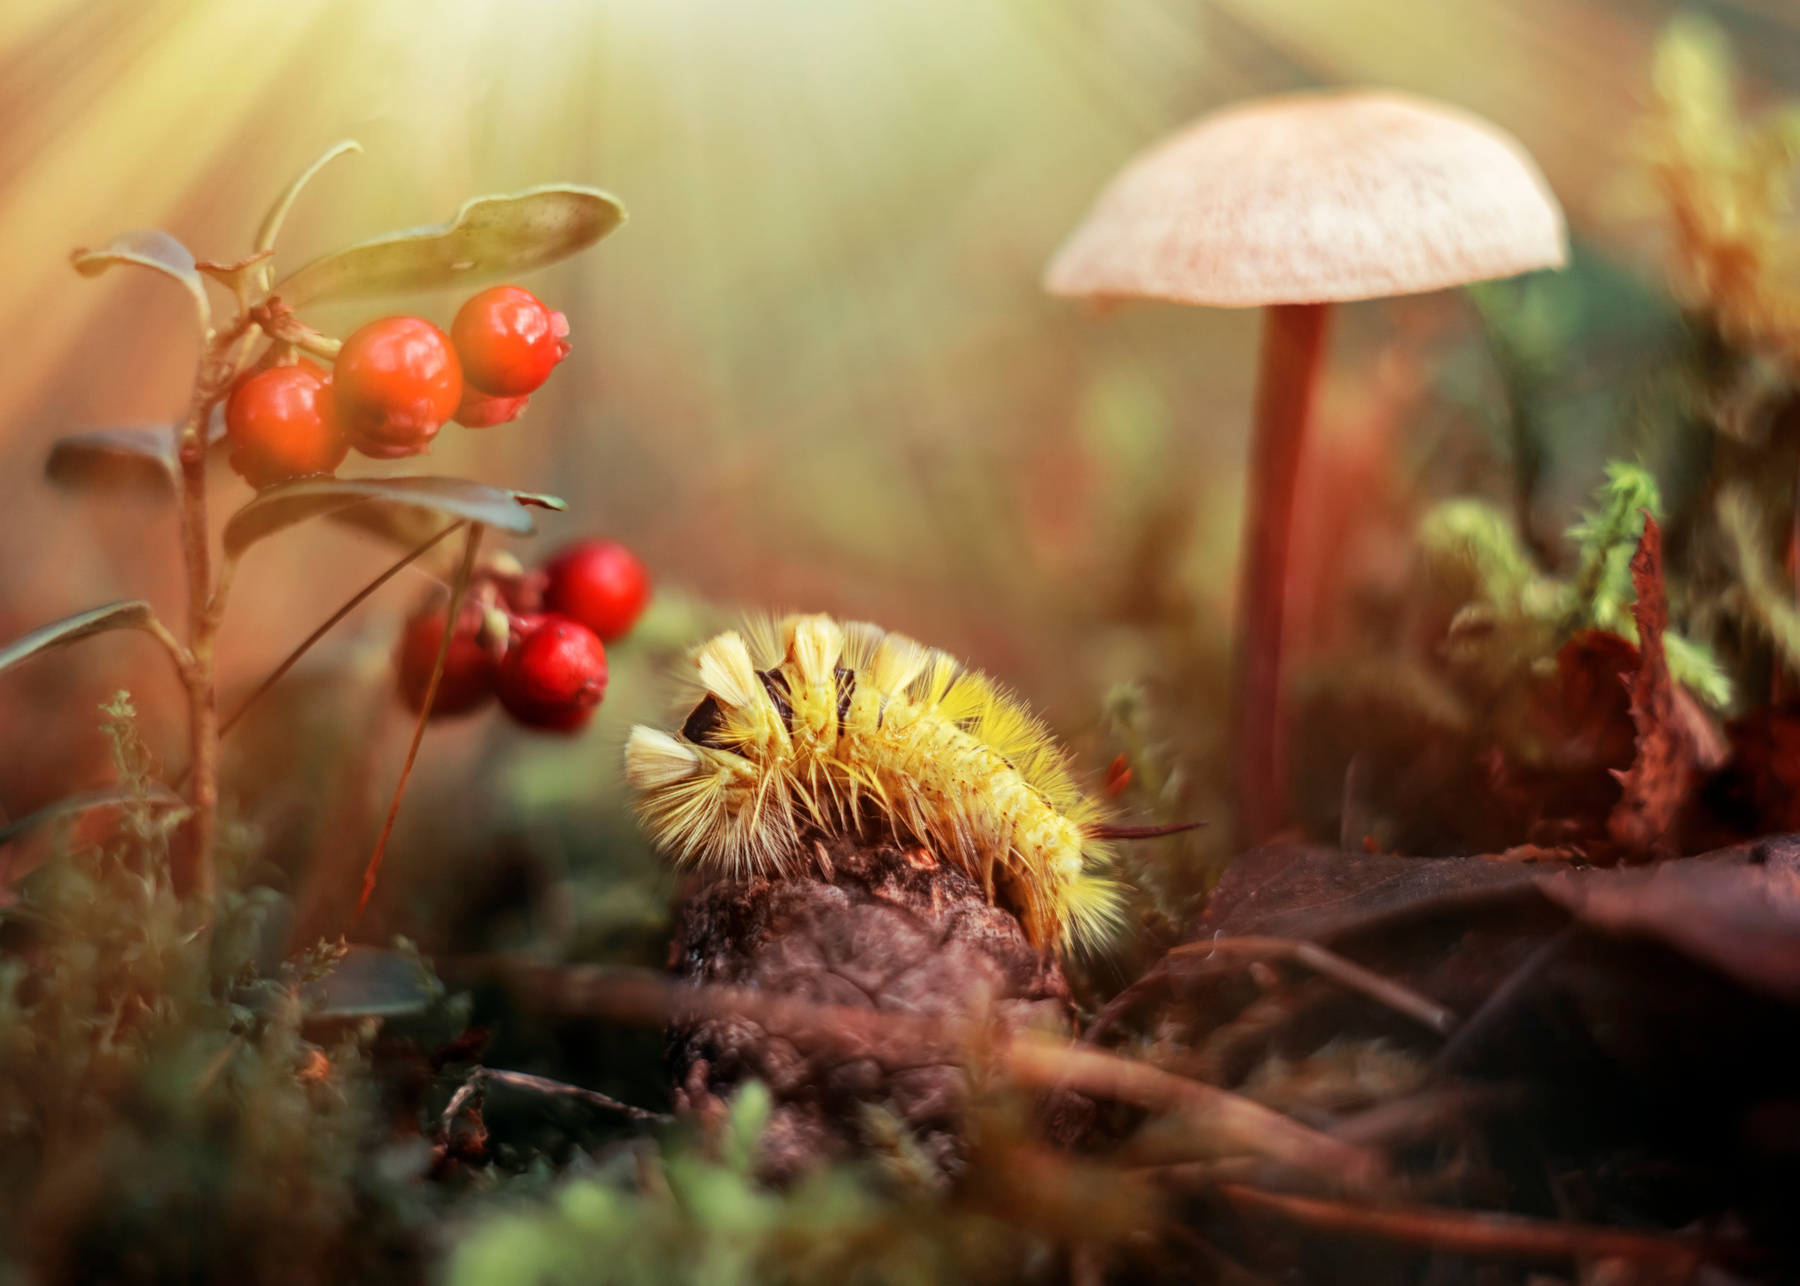 *** гриб лес природа макро ягода брусника гусеница